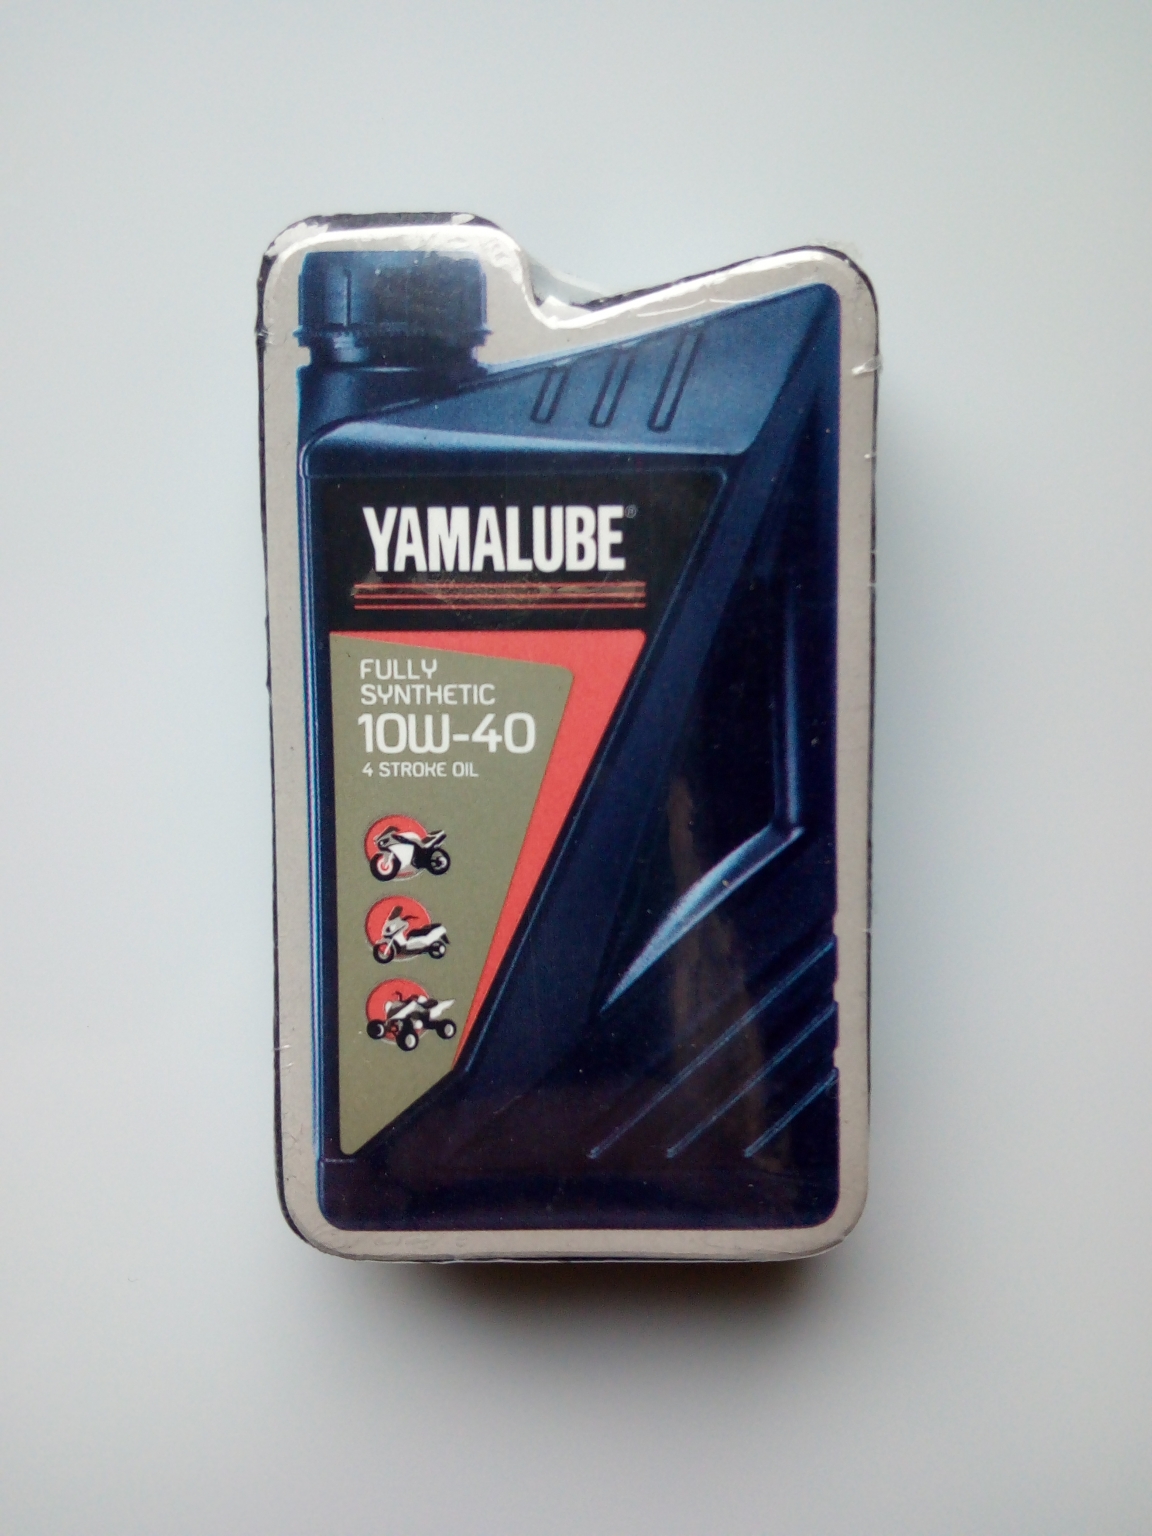  - Original Yamaha Bekleidung und Merchandise 5